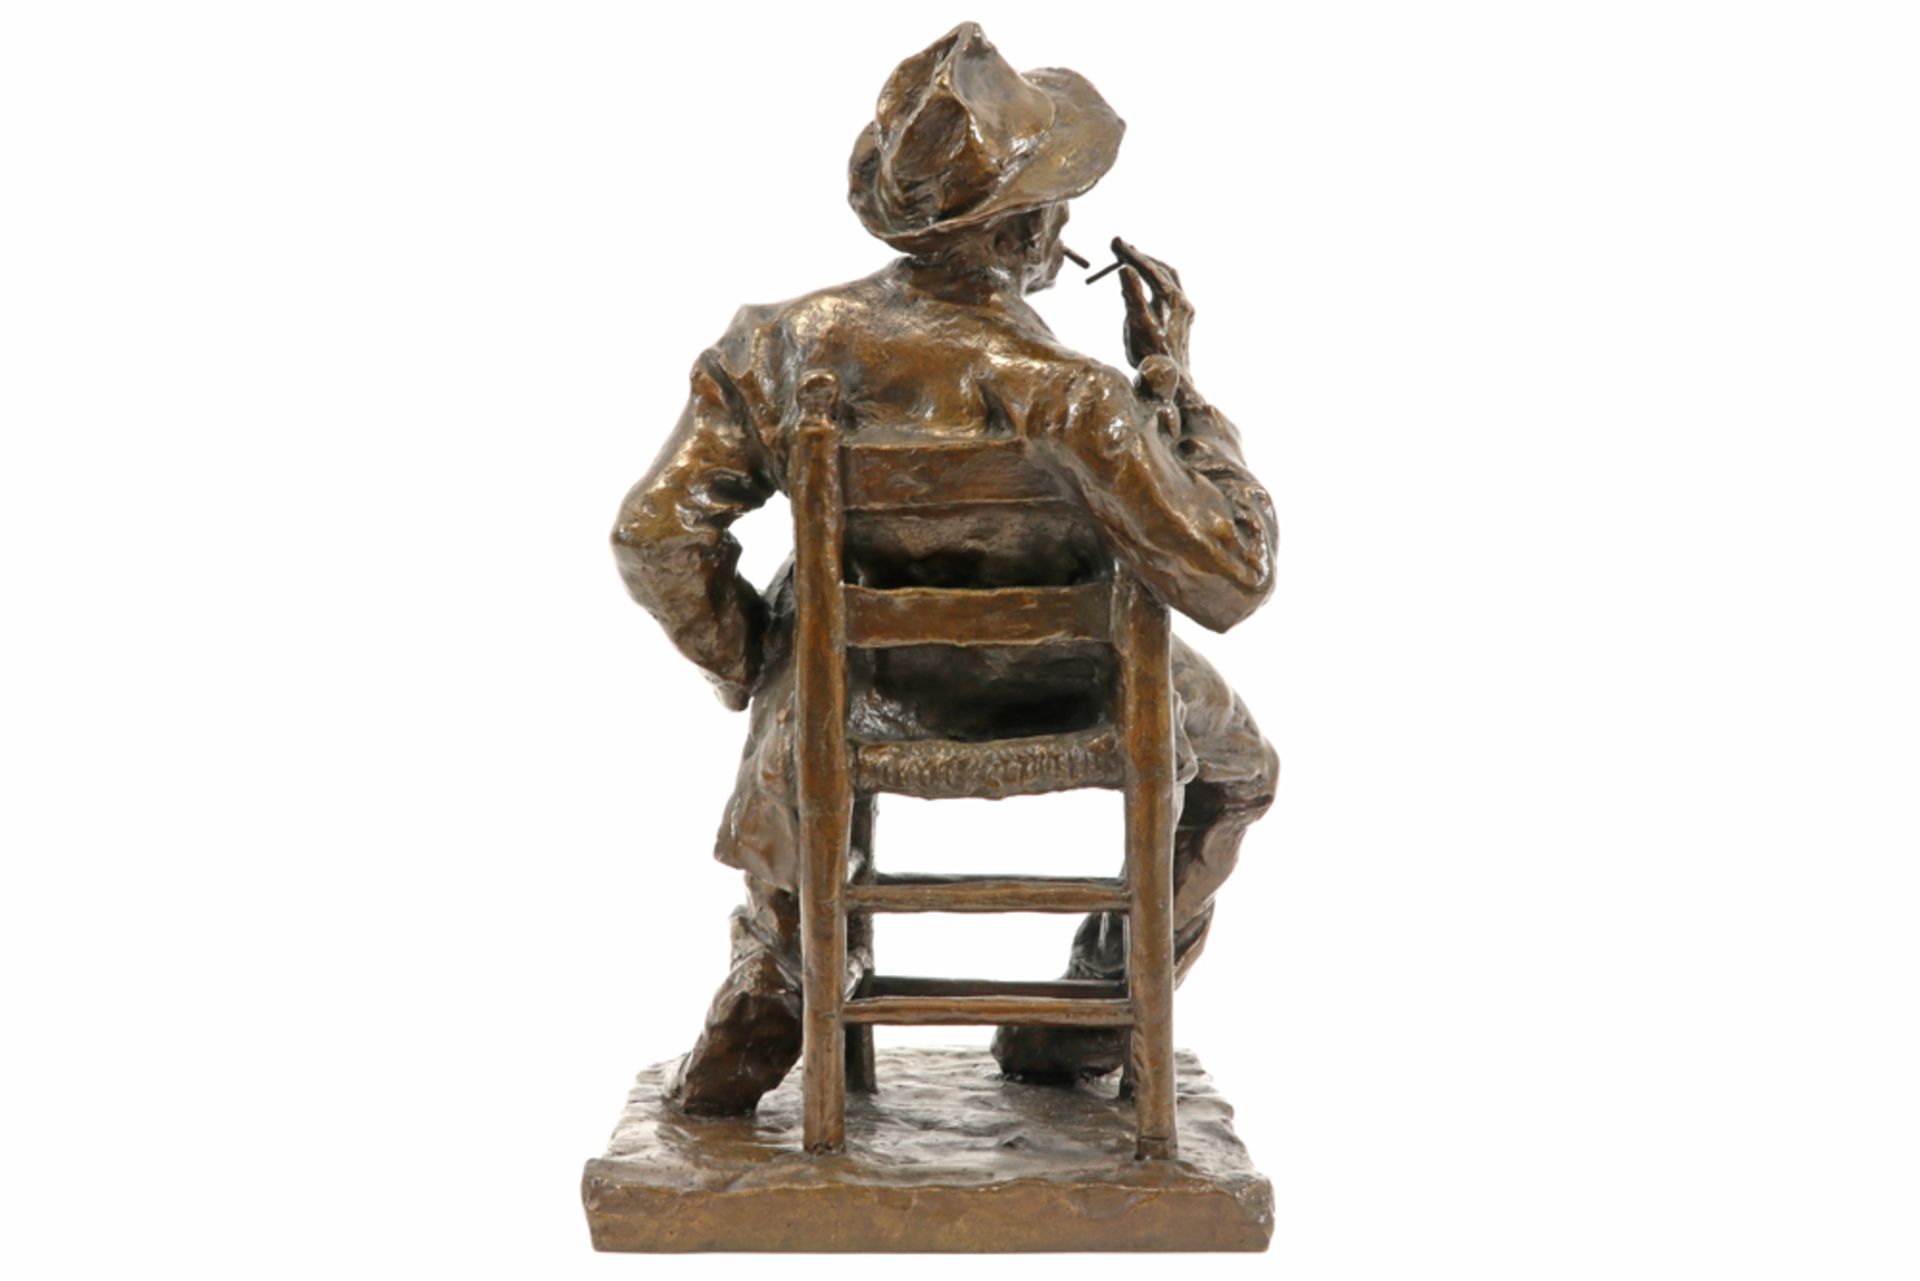 late 19th/early 20th Cent. Dutch sculpture in bronze - signed Charles Van Wijk || VAN WIJK - Bild 4 aus 5